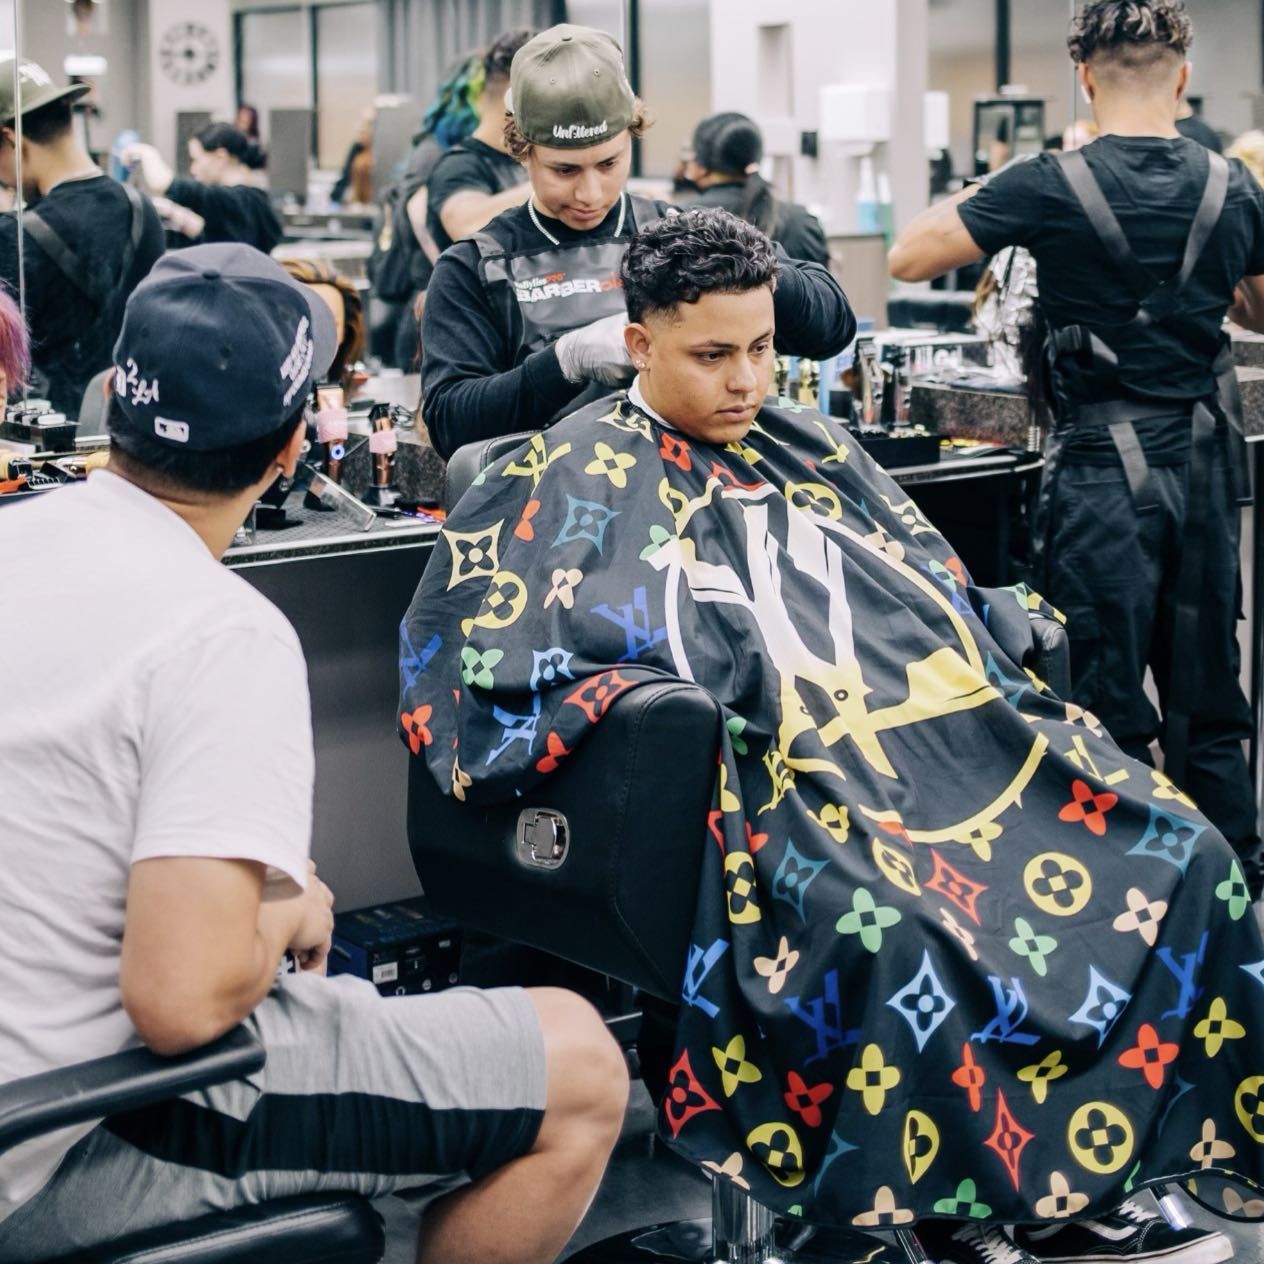 RM BLENDS - Unfiltered Barbershop